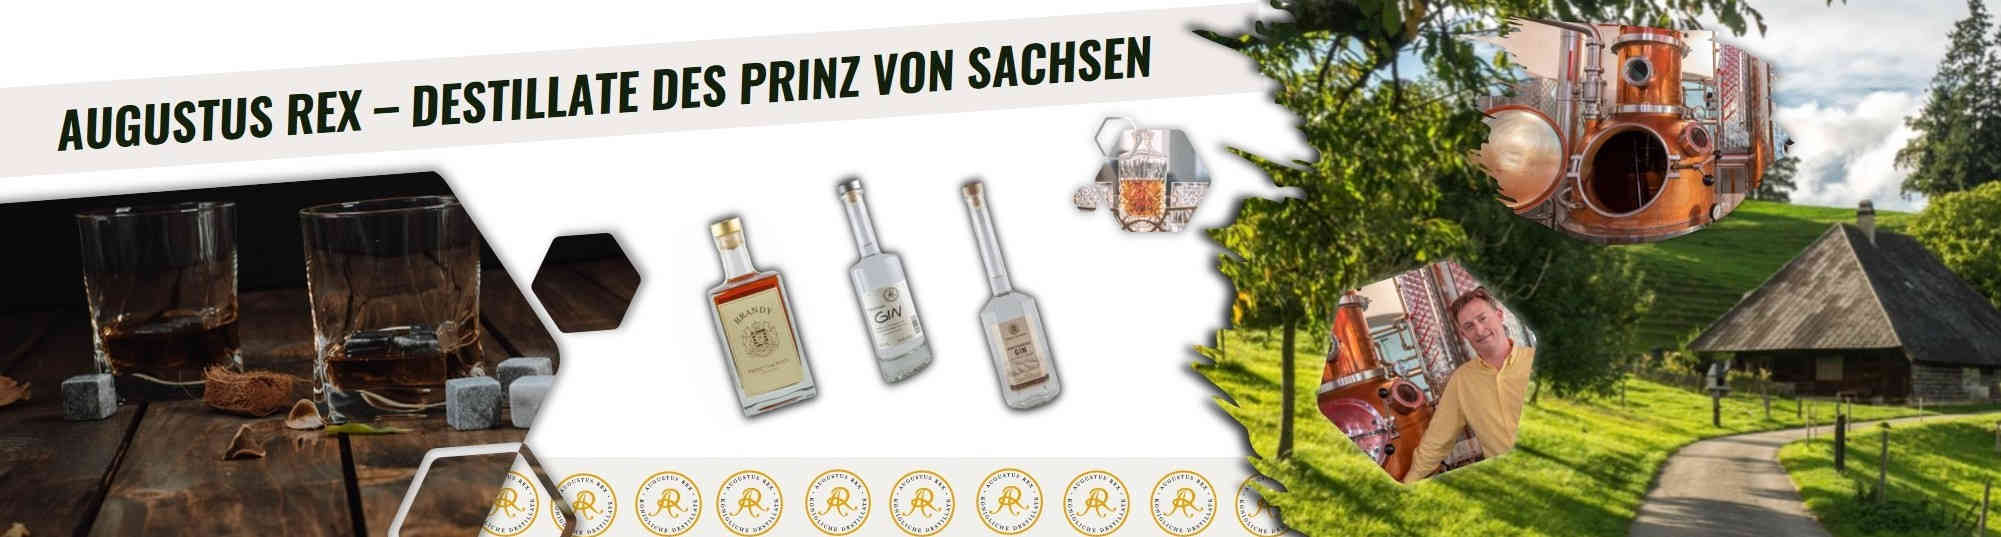 Augustus REX - Prinz von Sachsen Destillate kaufen